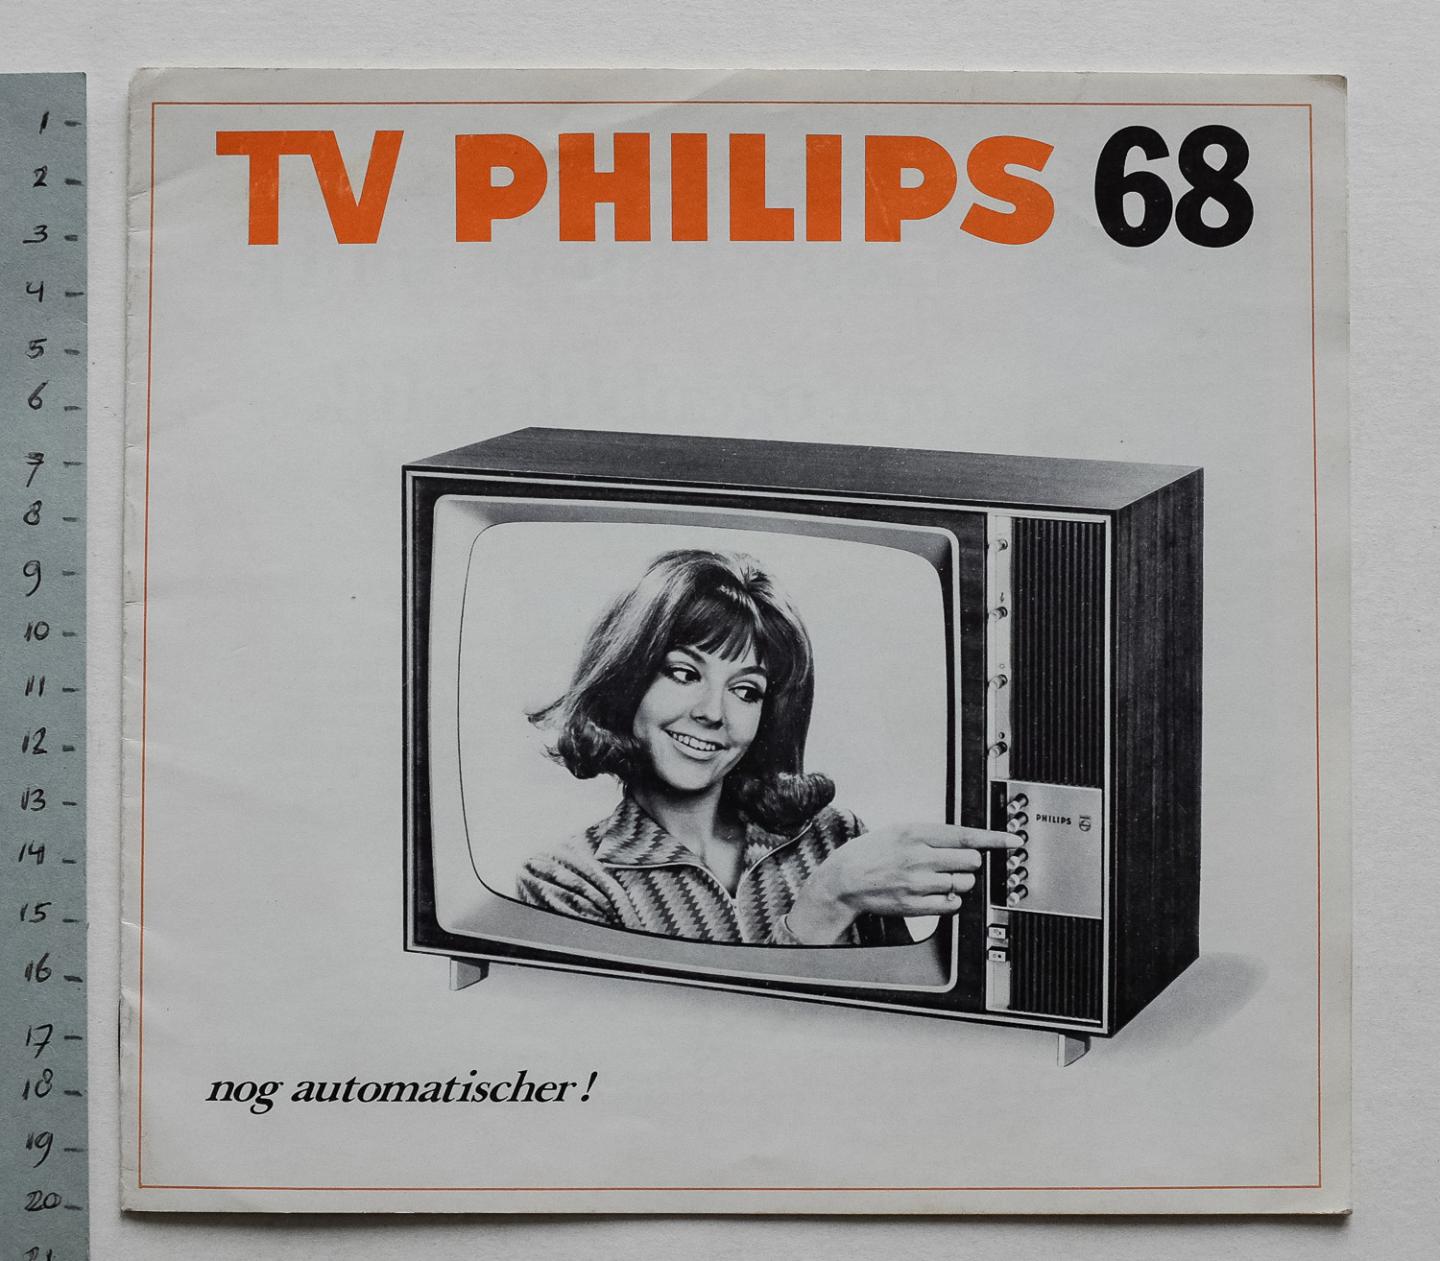 Philips Gloeilampenfabrieken Nederland n.v., Eindhoven - TV Philips 68 - nog automatischer!